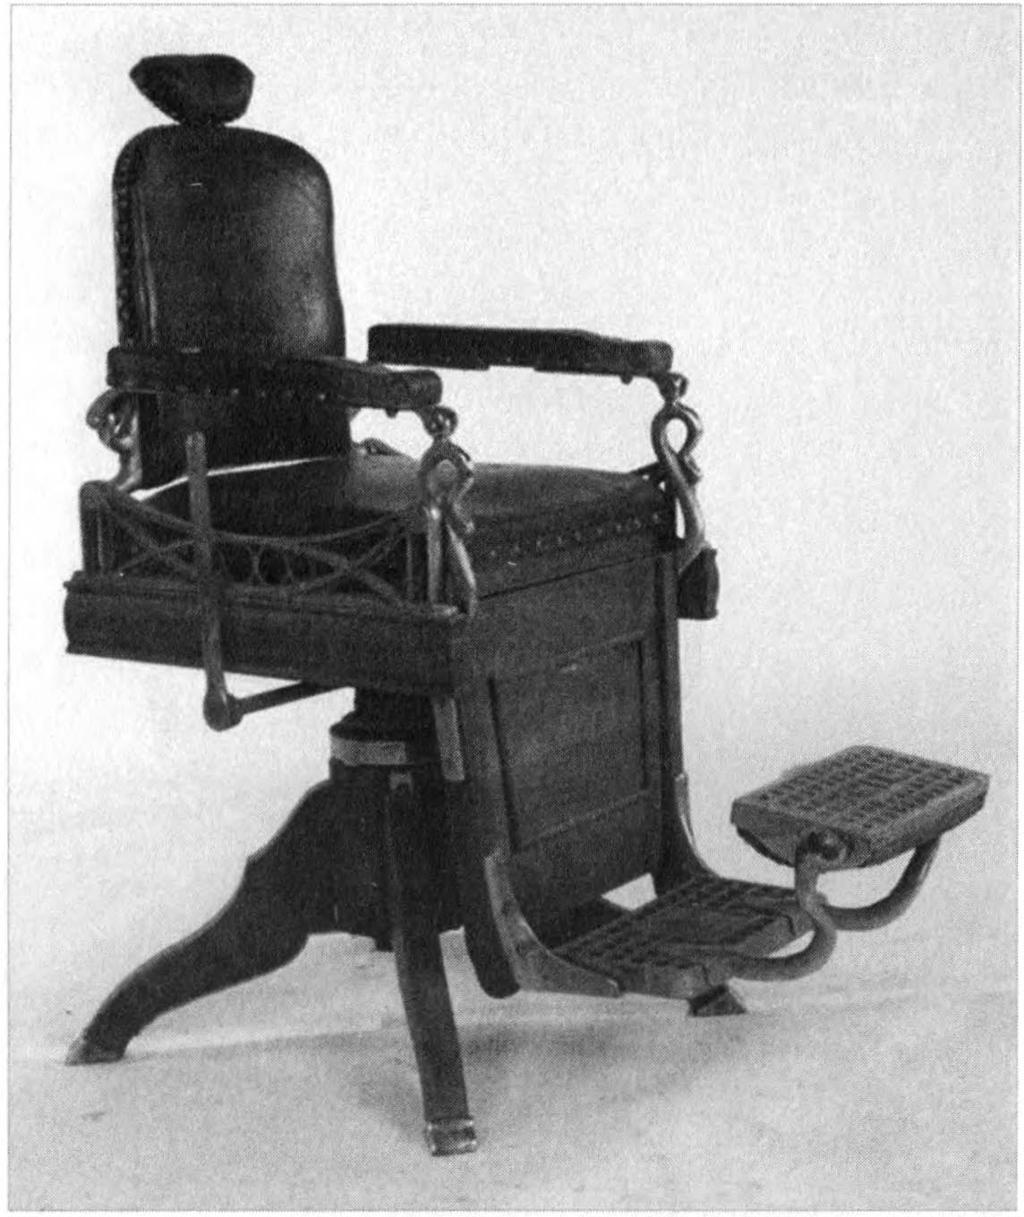 Resim 4: 1890'1ardan Koken marka meşe ve deri berber koltuğu. rik kütleden hacim boşaltmaları yaparak müdahil olduğunu görüyoruz.